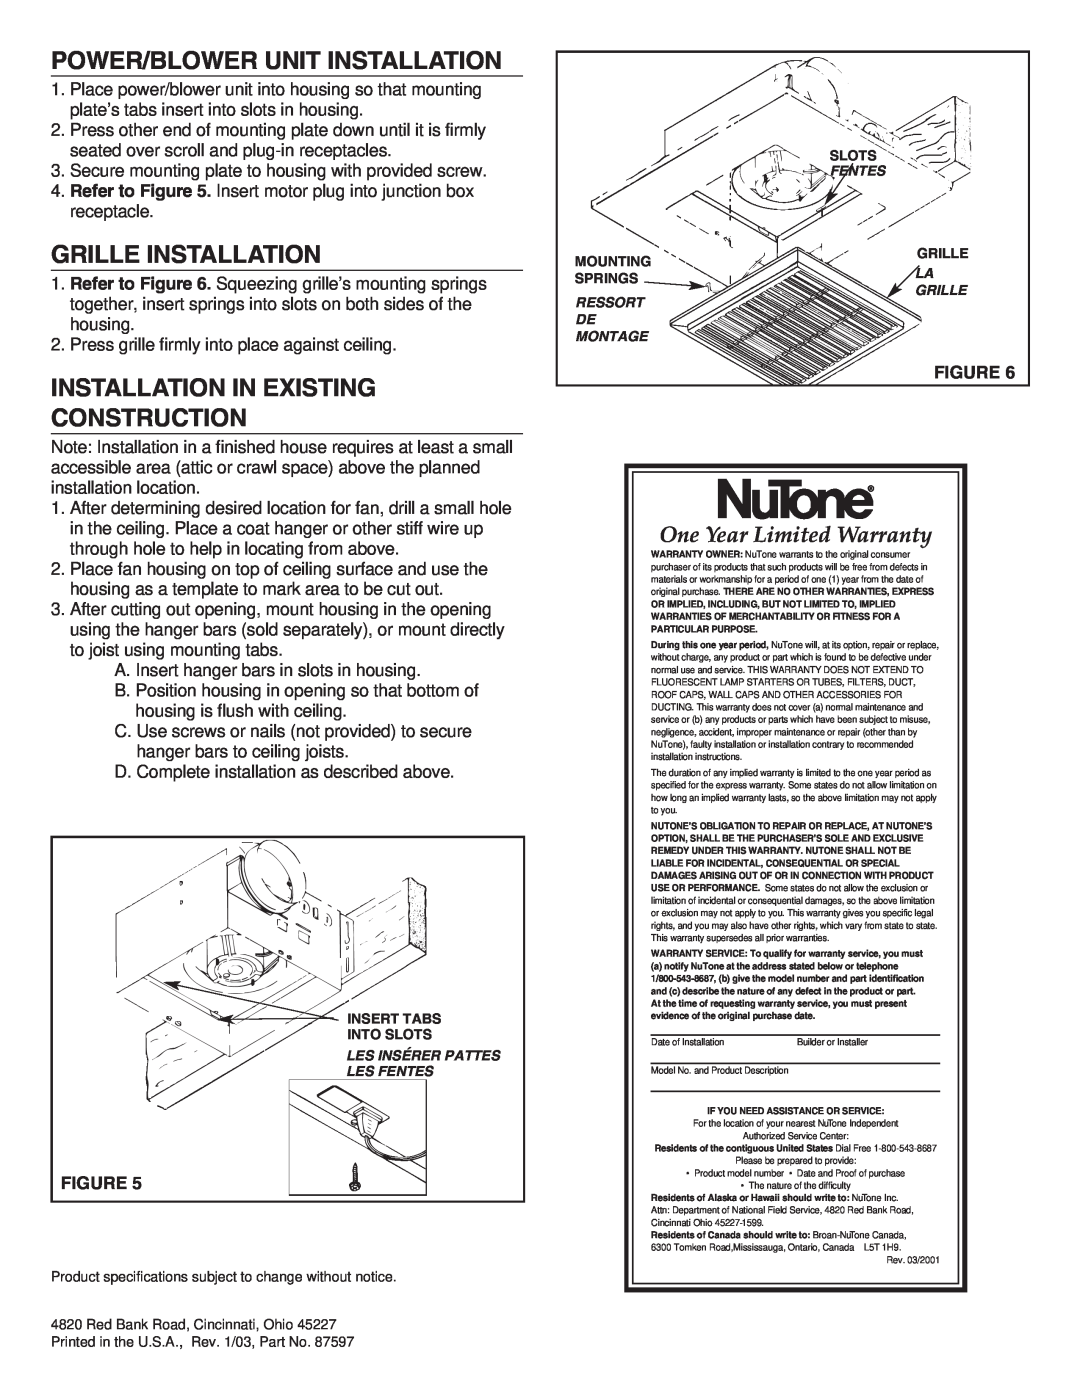 NuTone 671R, 672R Power/Blower Unit Installation, Grille Installation, Installation In Existing Construction 